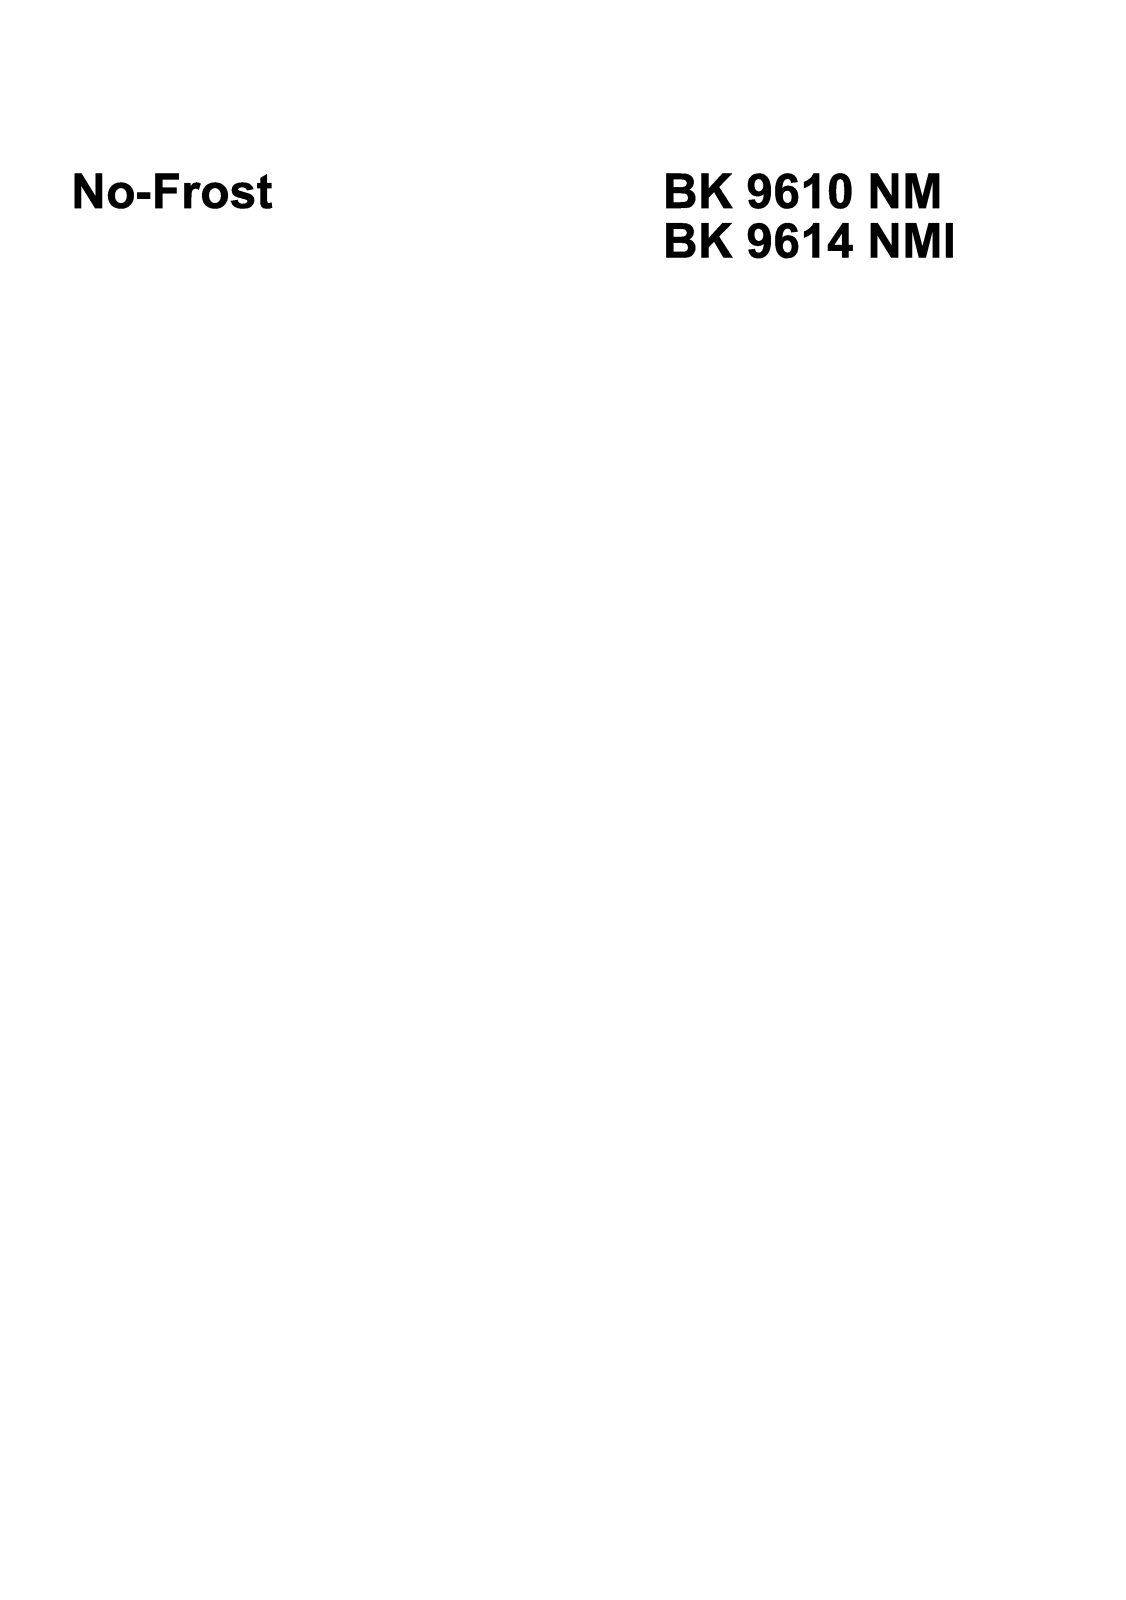 Beko BK 9620 NM, BK 9614 NMI User Manual